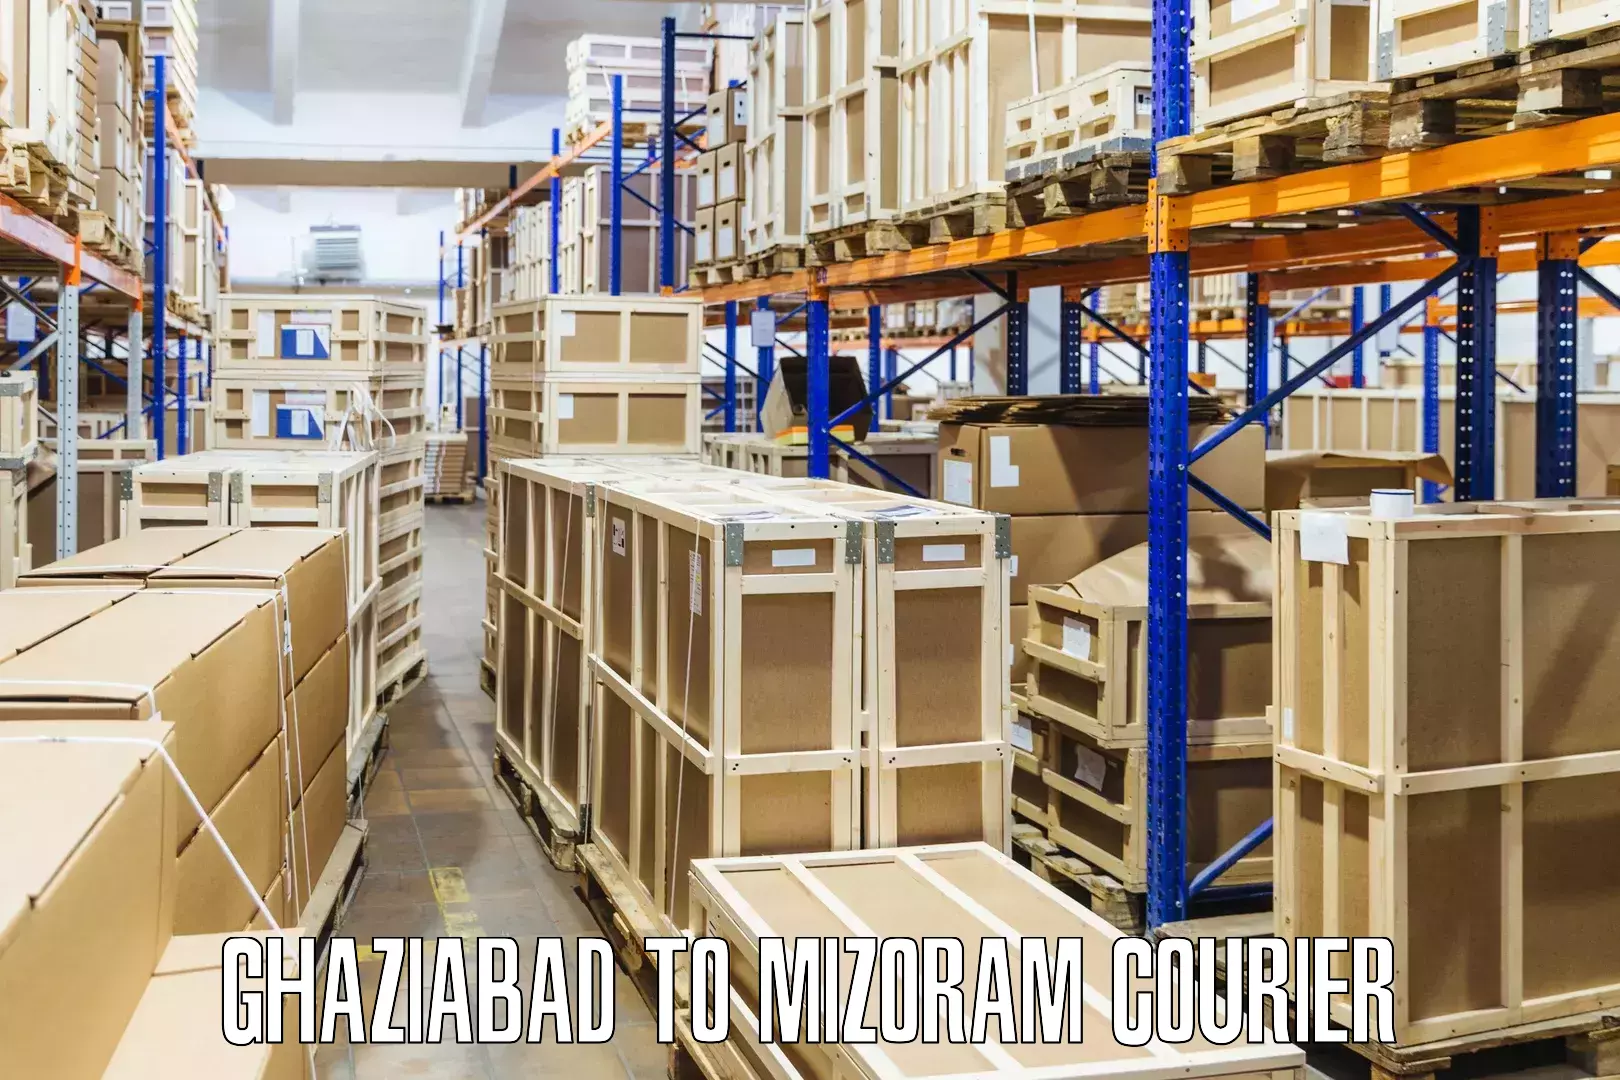 Cross-border shipping Ghaziabad to Mizoram